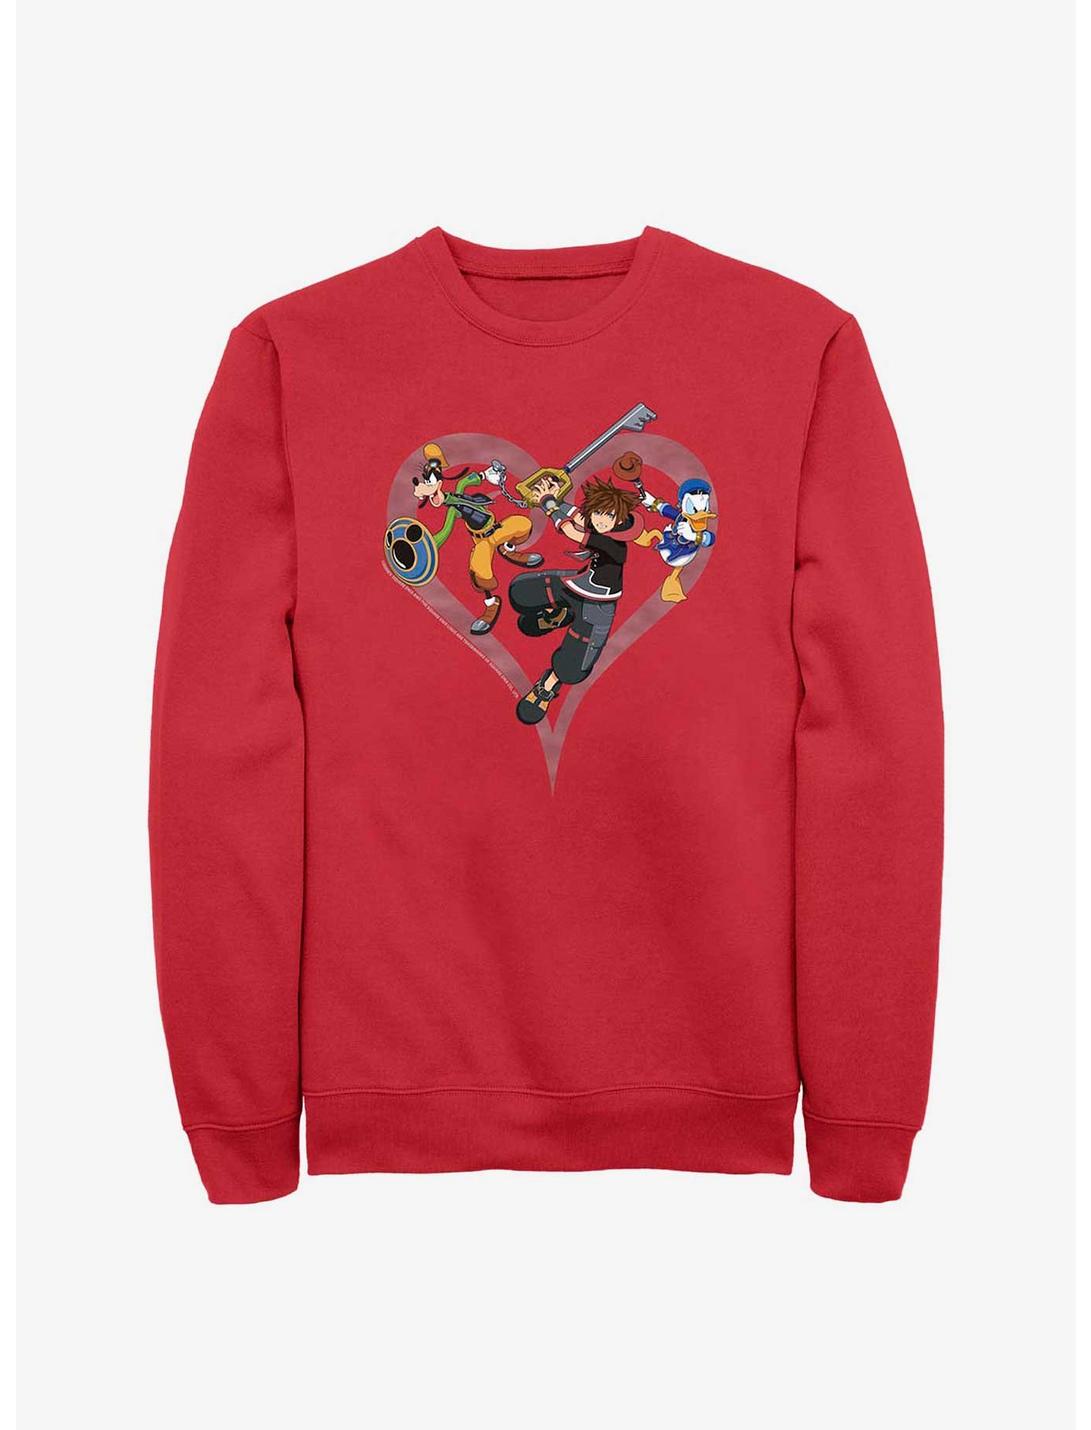 Disney Kingdom Hearts Sora Goofy Donald Crew Sweatshirt, RED, hi-res